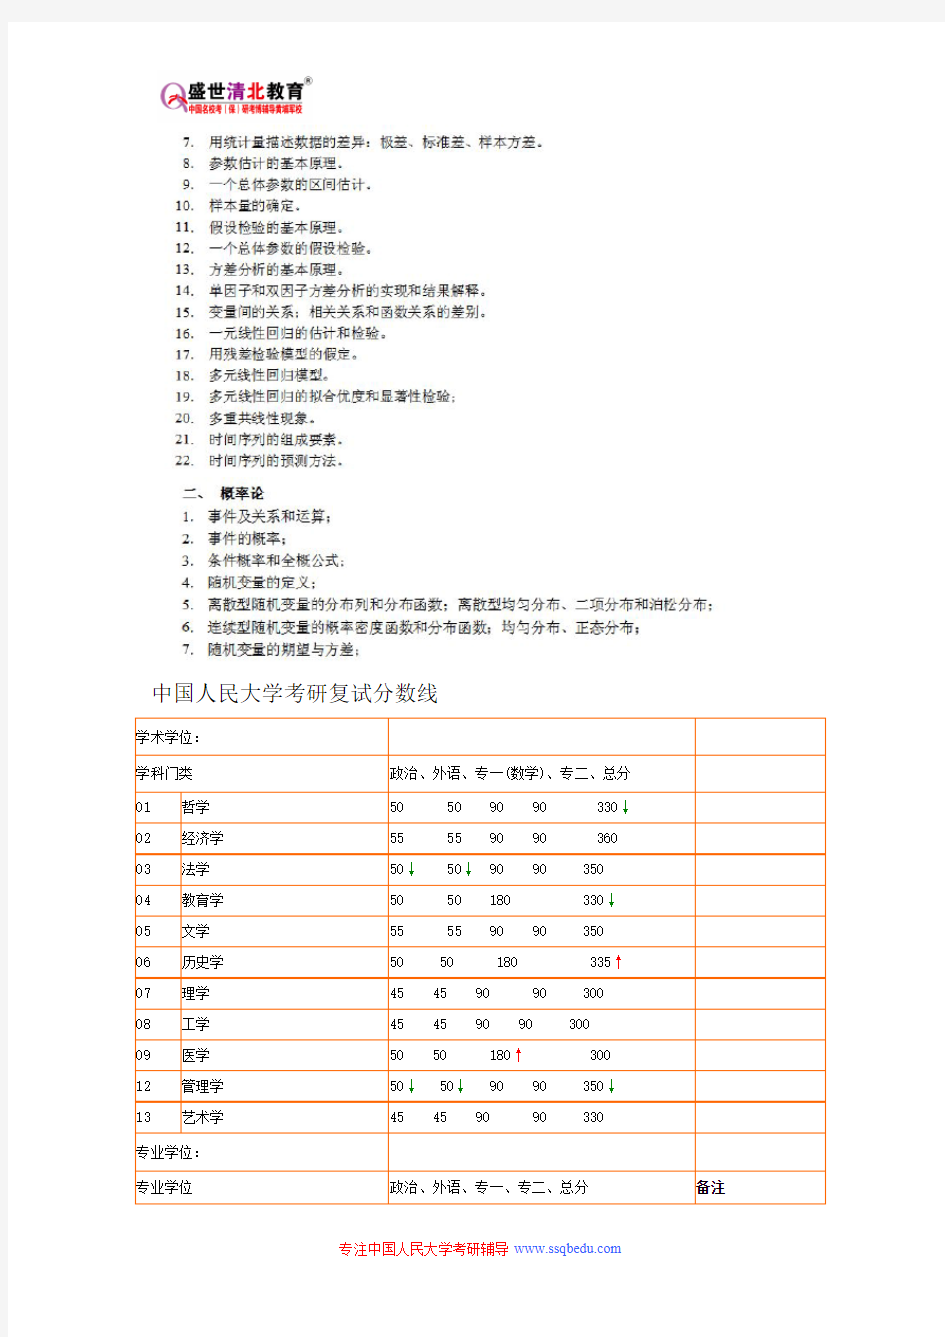 中国人民大学432-统计学考研参考书目、考研真题、复试分数线